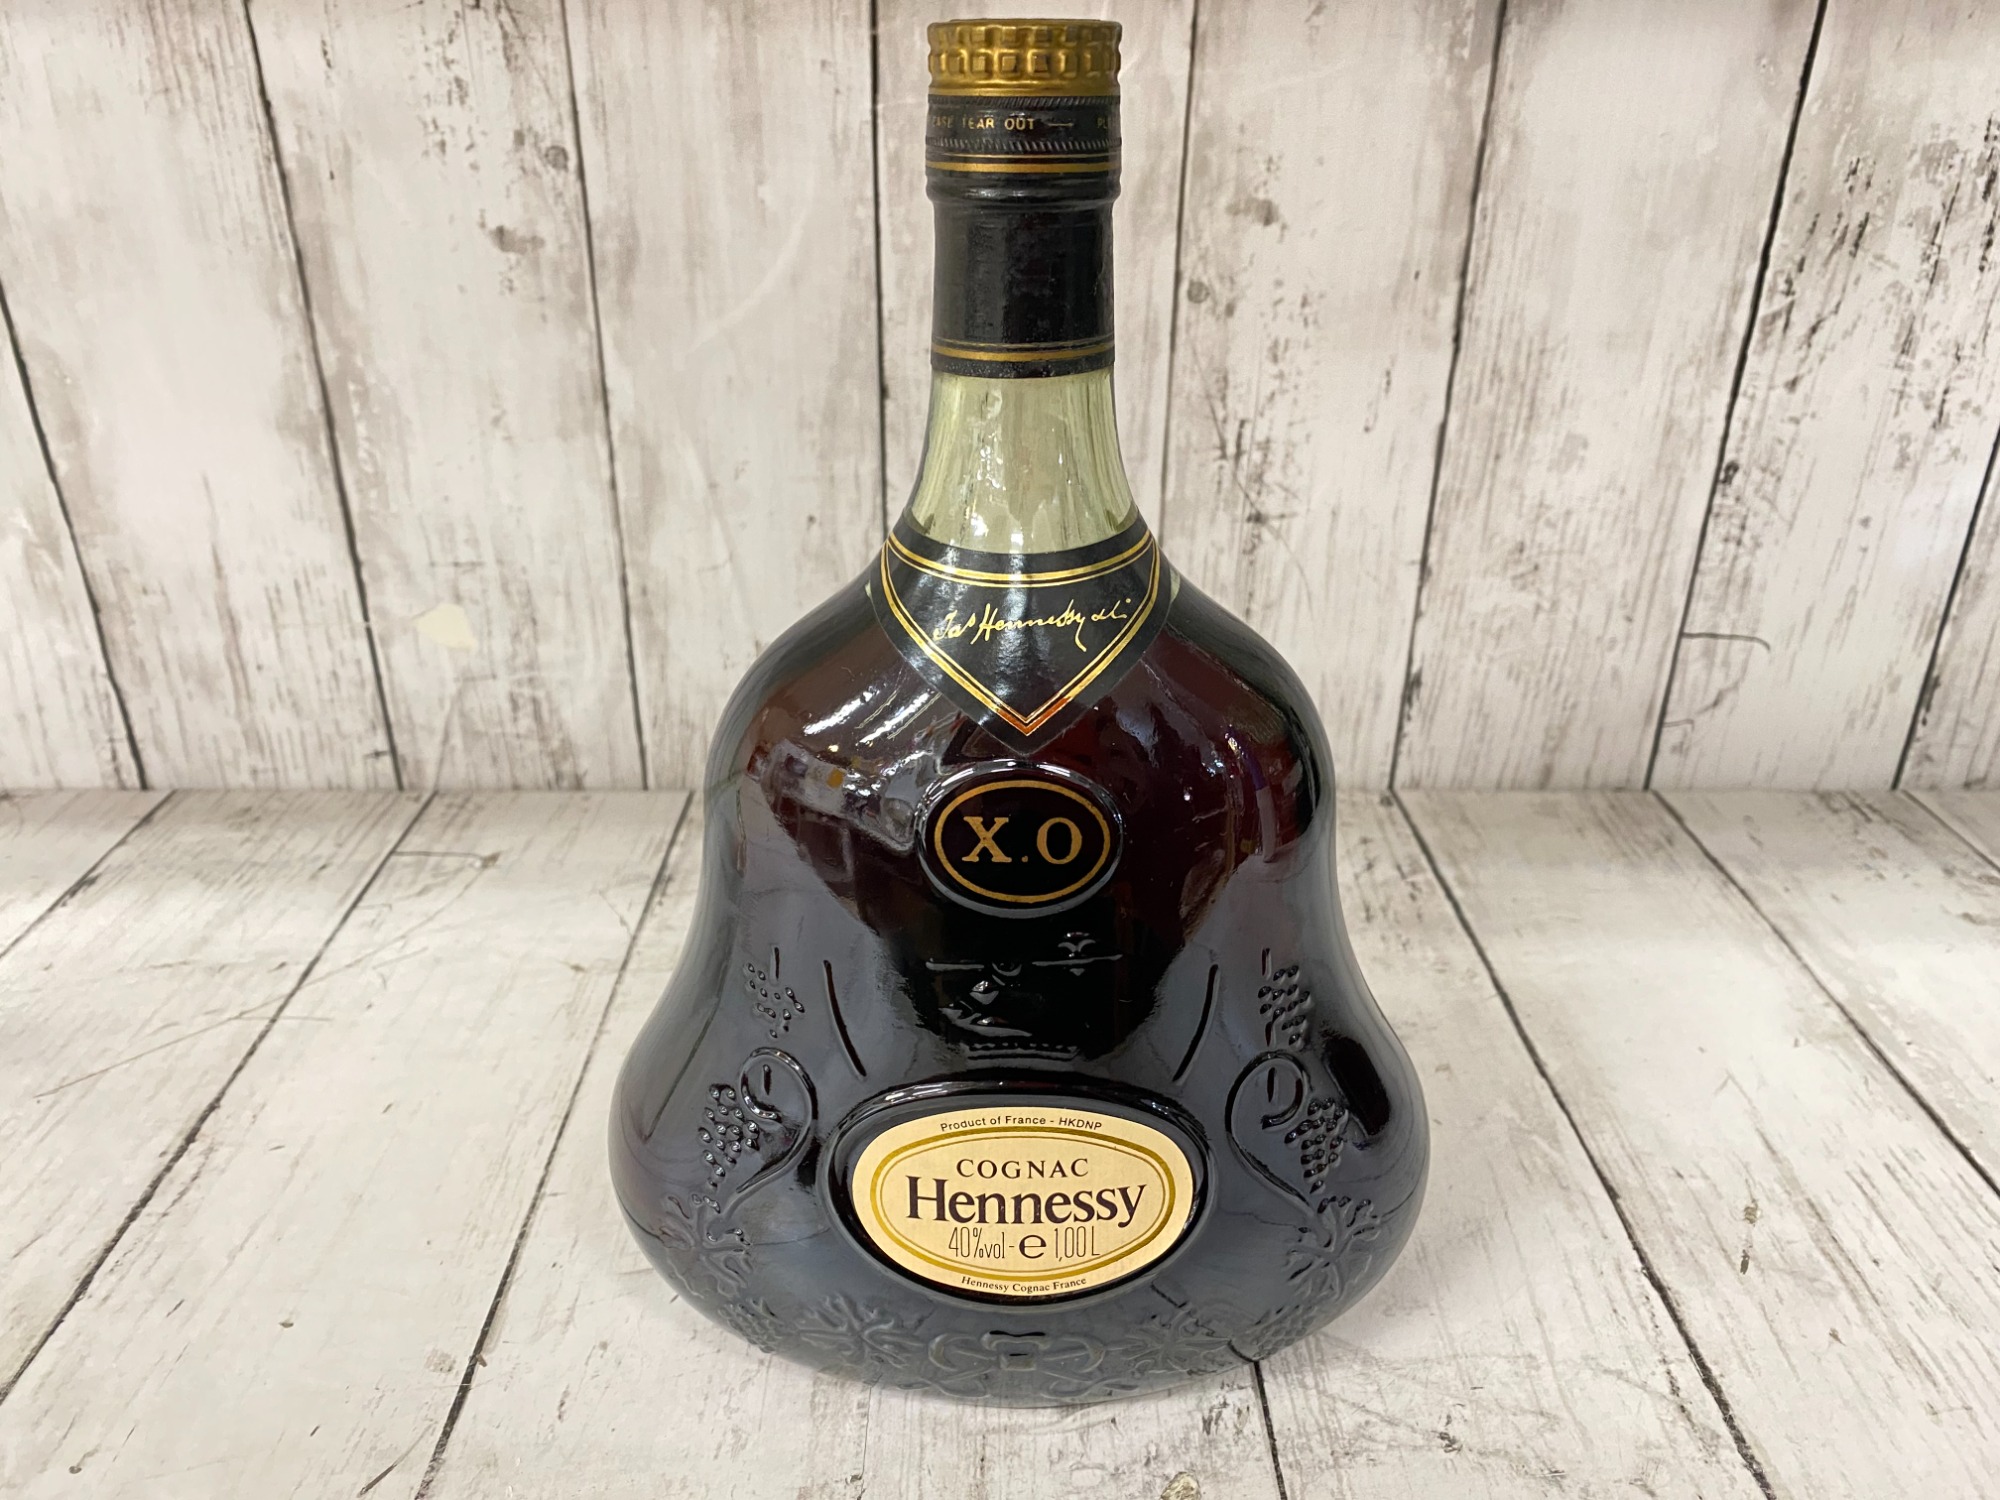 Hennessy(ヘネシー)XO金キャップクリアボトルが買取入荷致しました